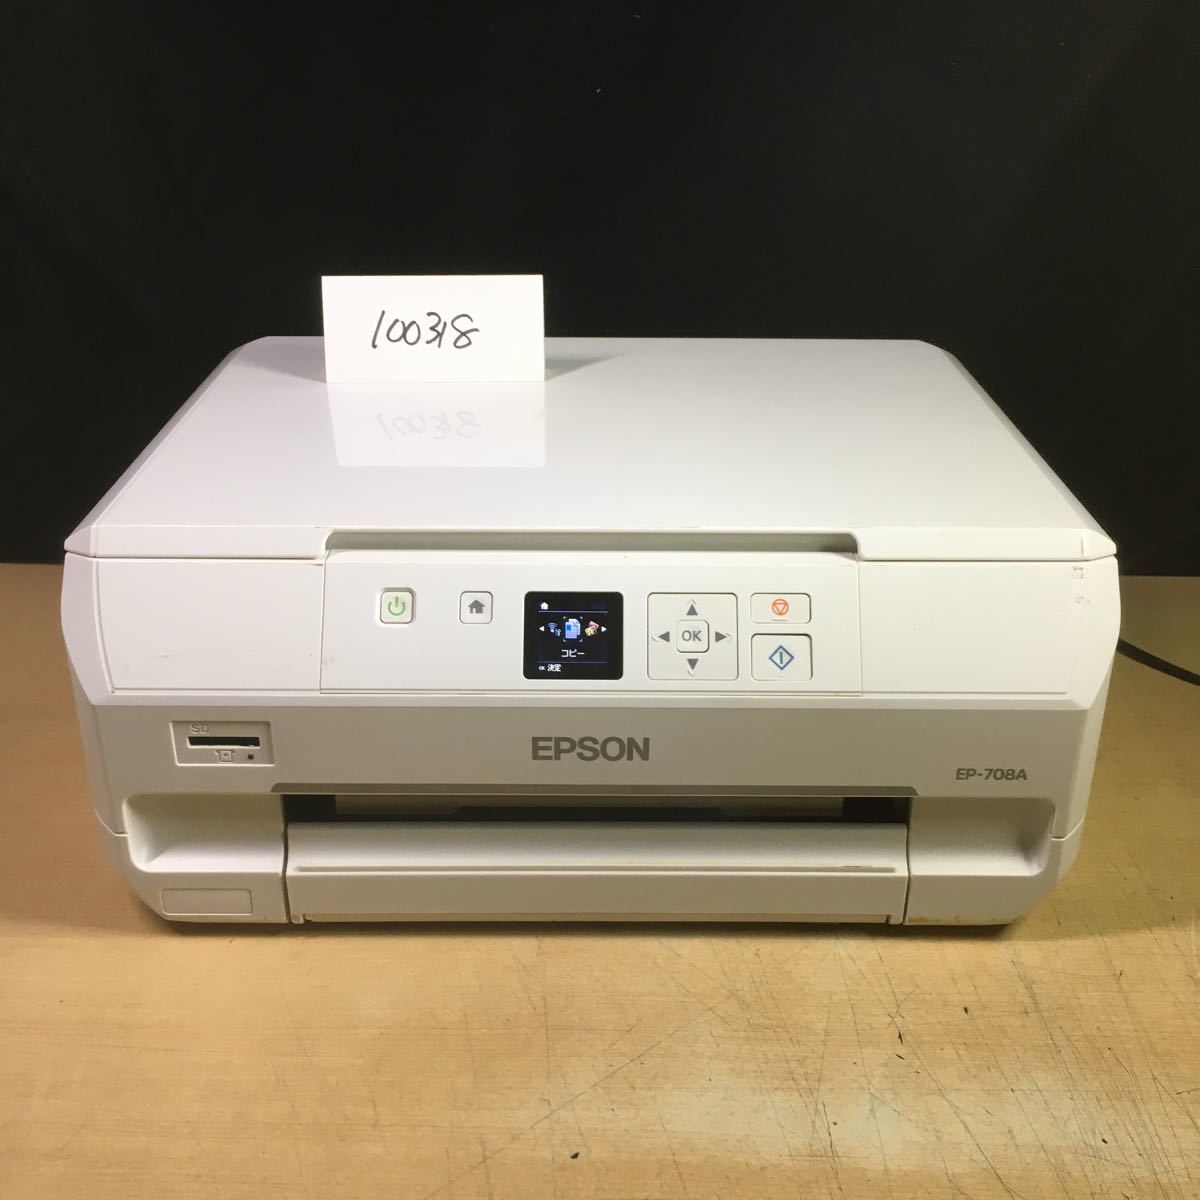 特価 EPSON (100318) EP-708A ジャンク品 本体のみ 複合機